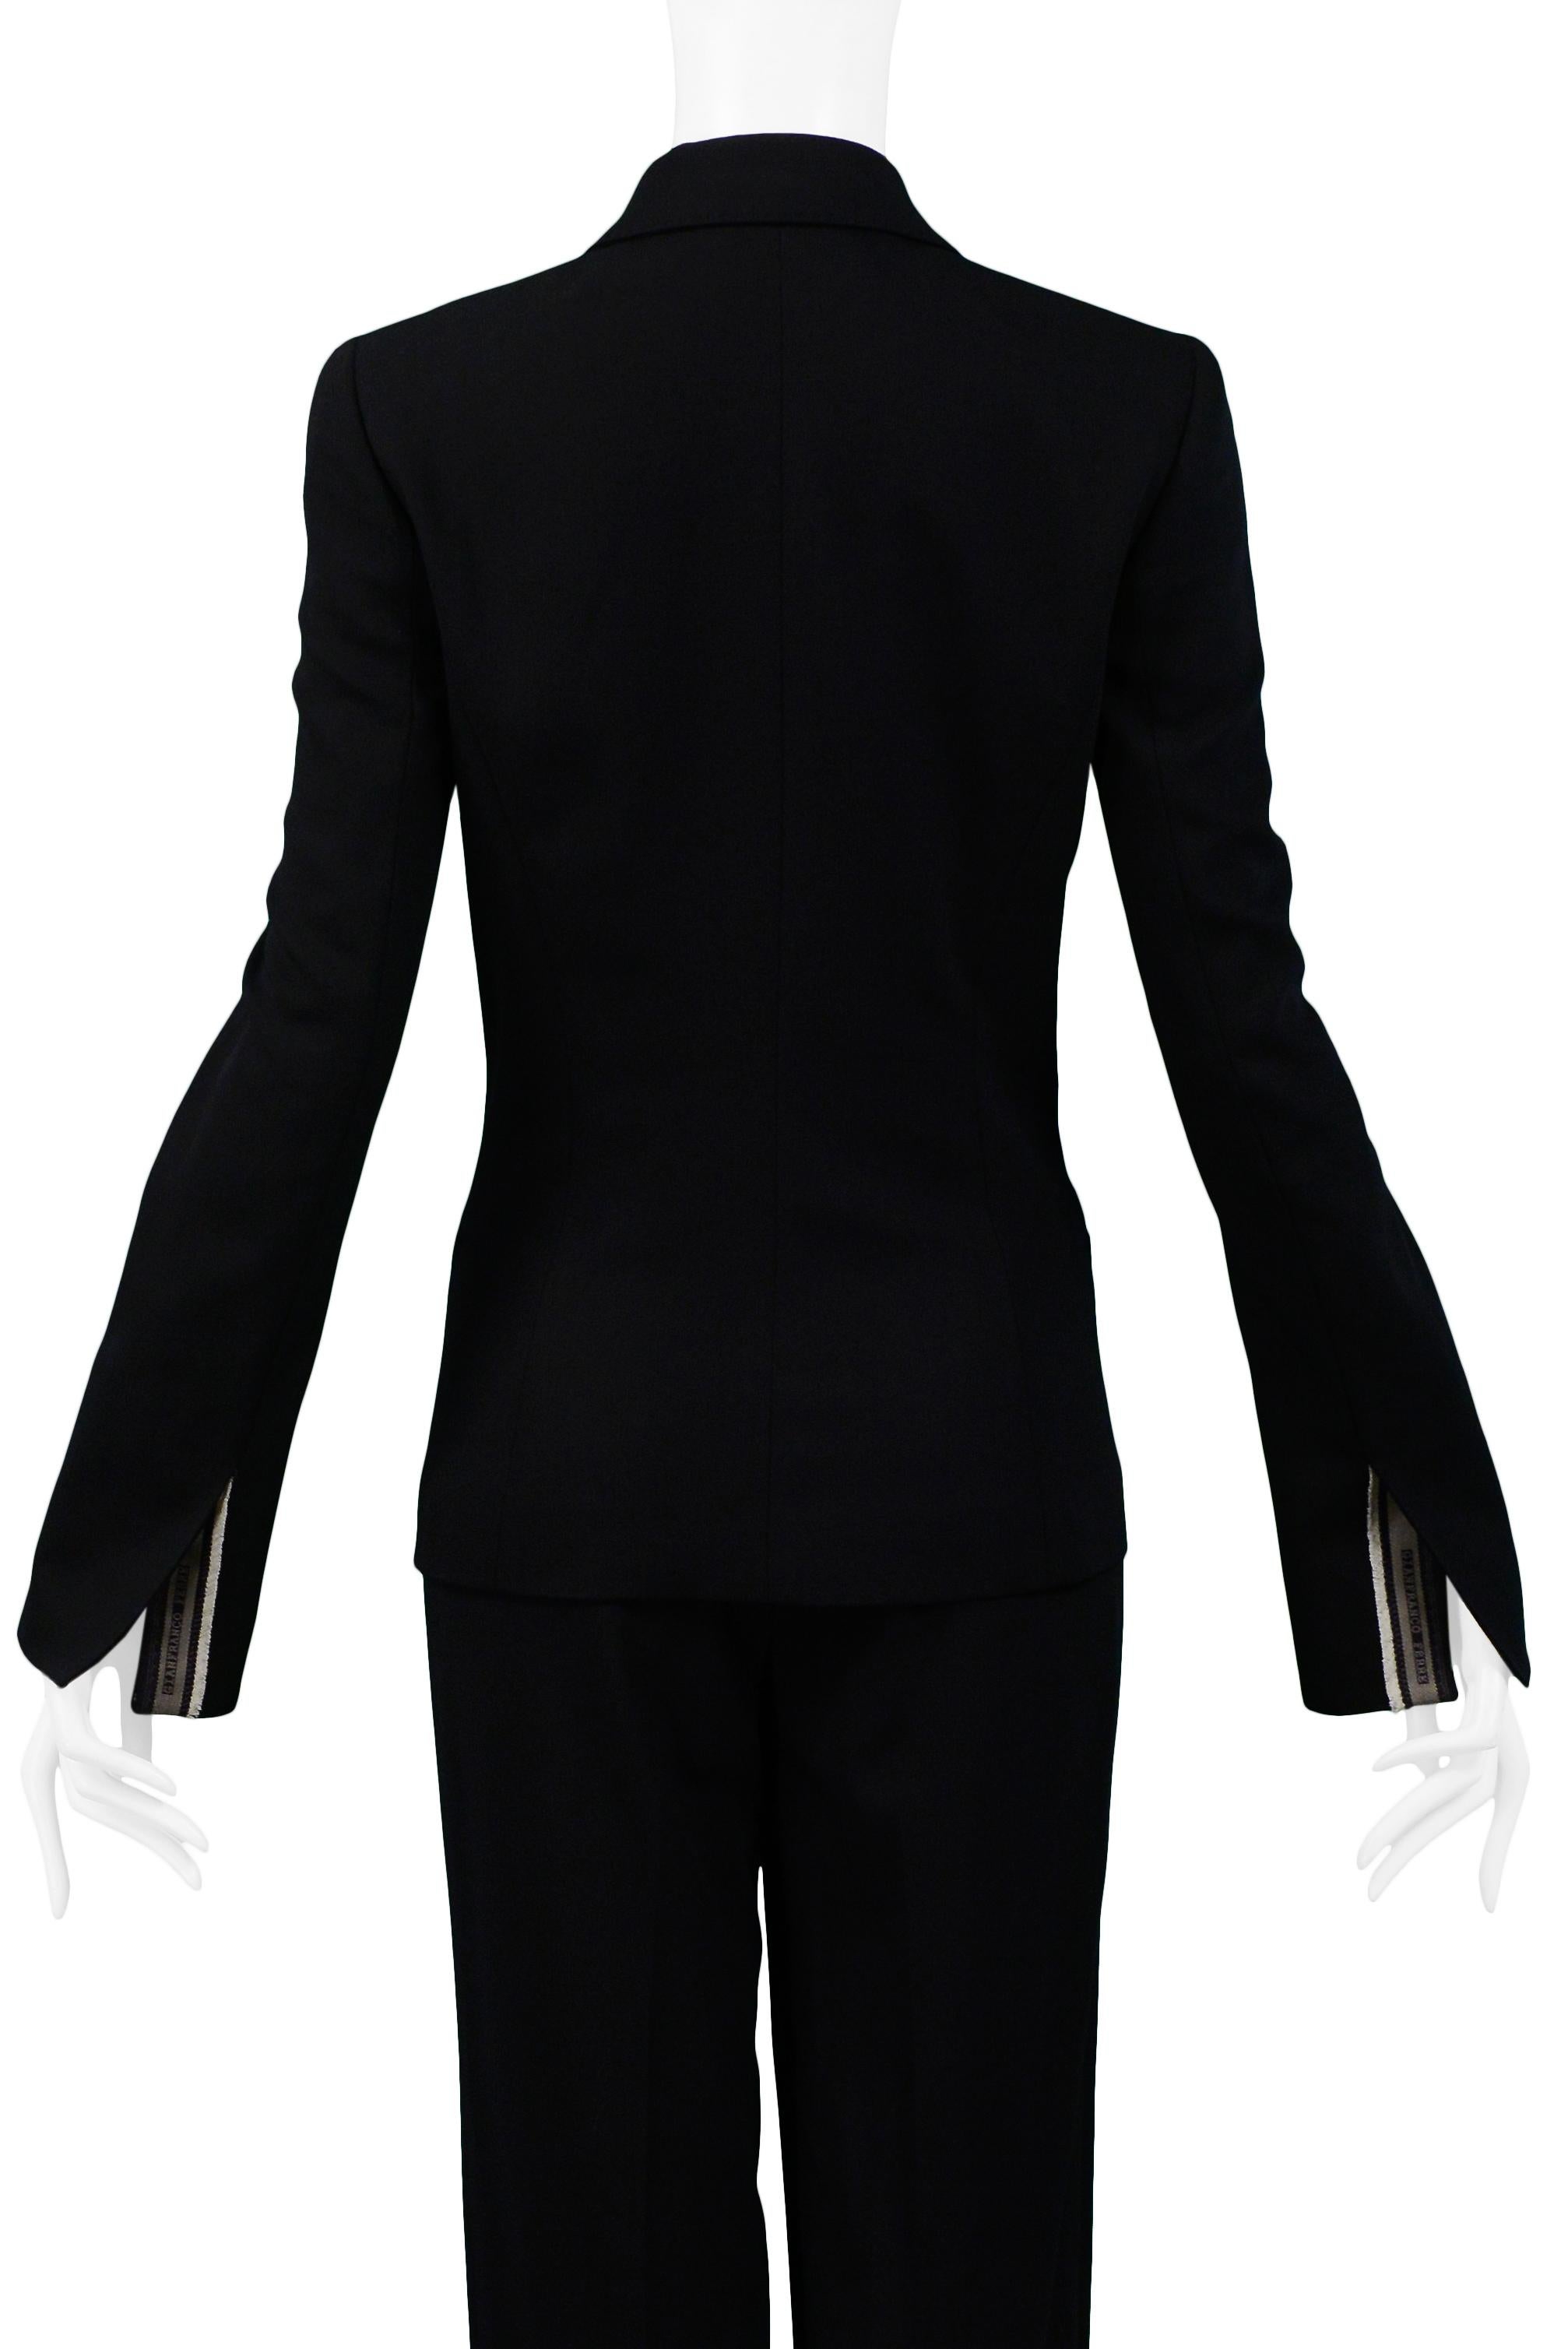 Gianfranco FerrecClassic Black Tailored Suit For Sale 3